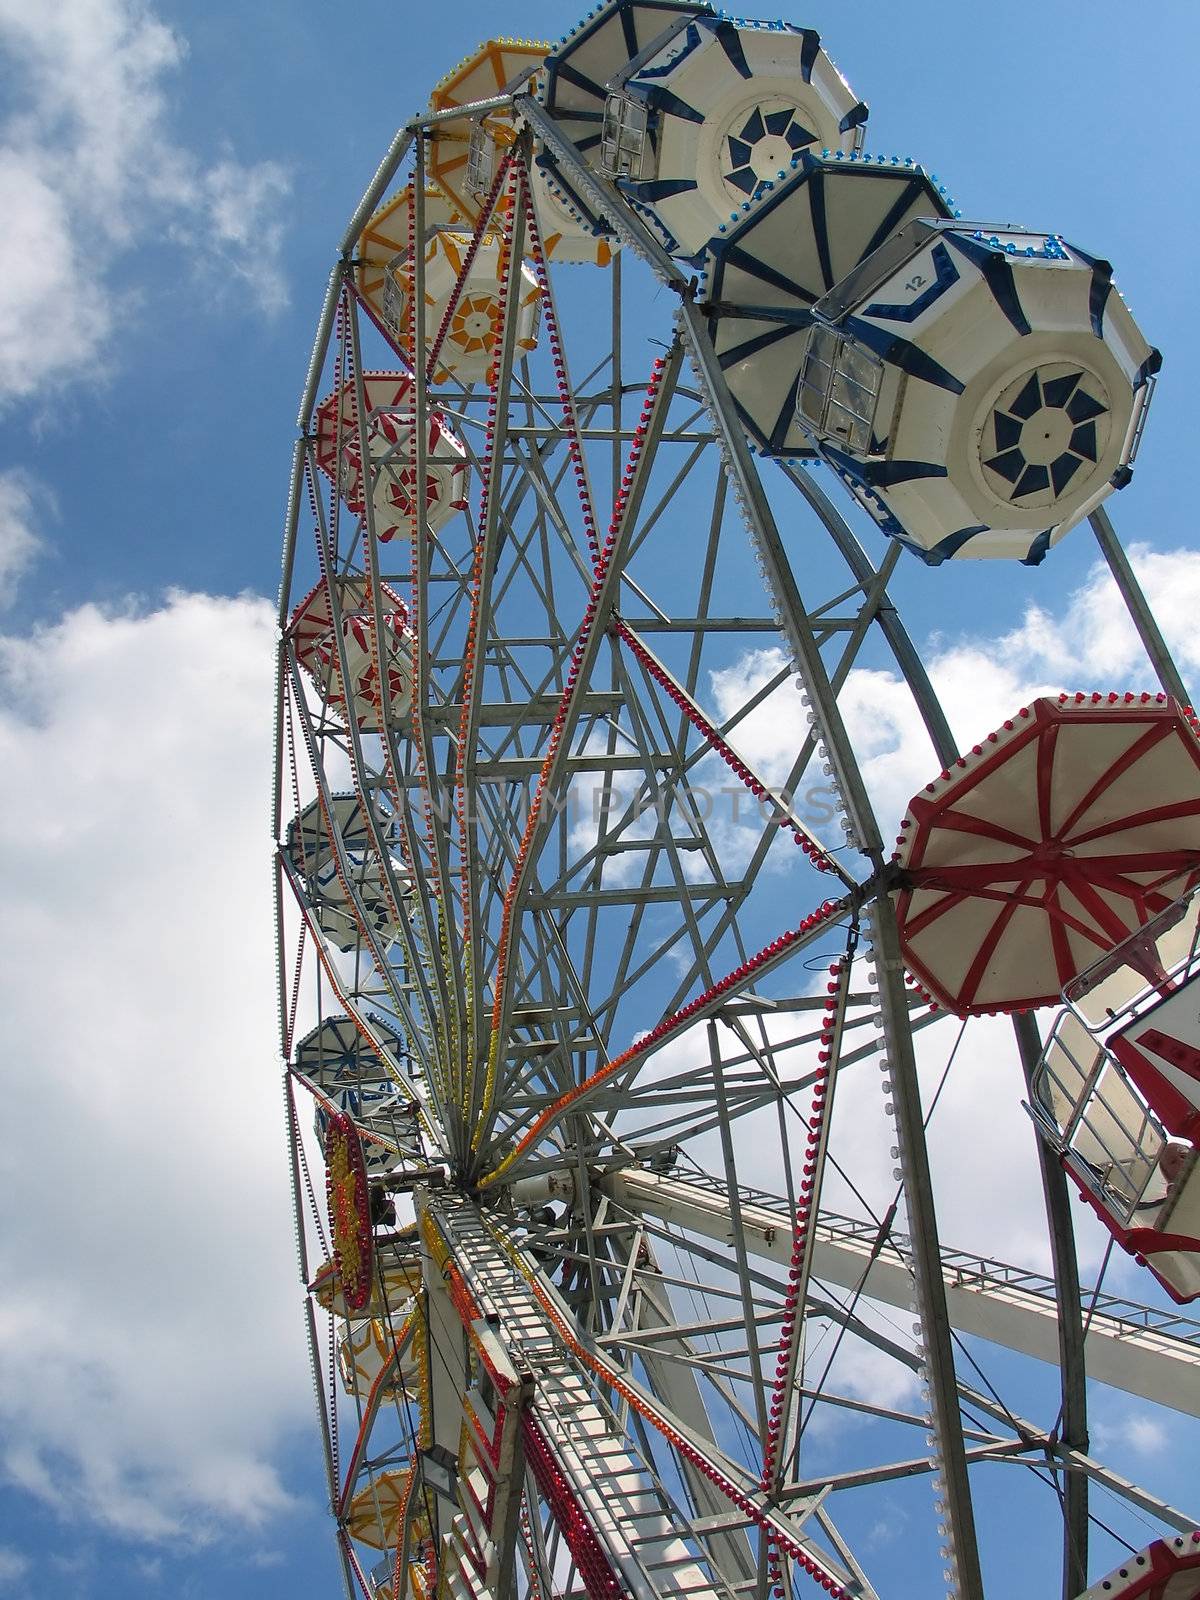 Ferris wheel at a traditional summer county fair